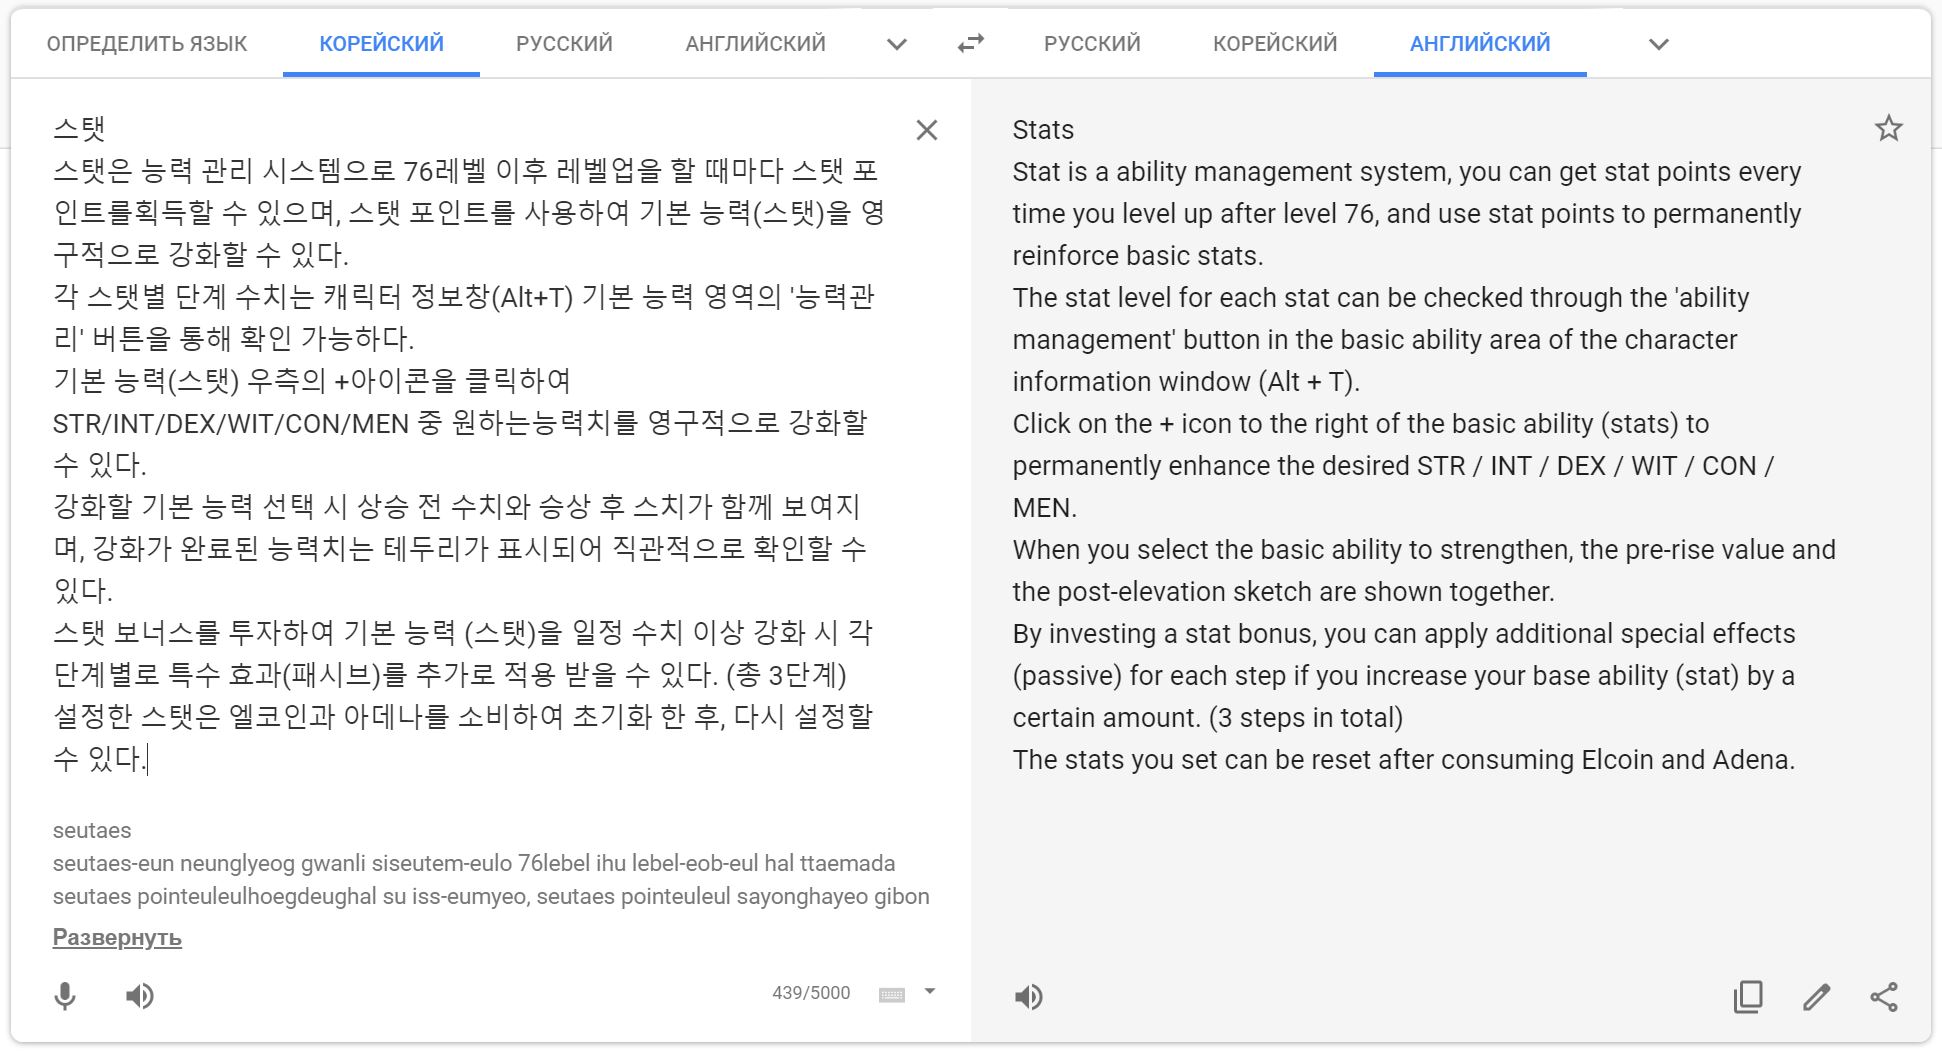 Перевод с корейского языка на английский язык через Google Translate кингуру